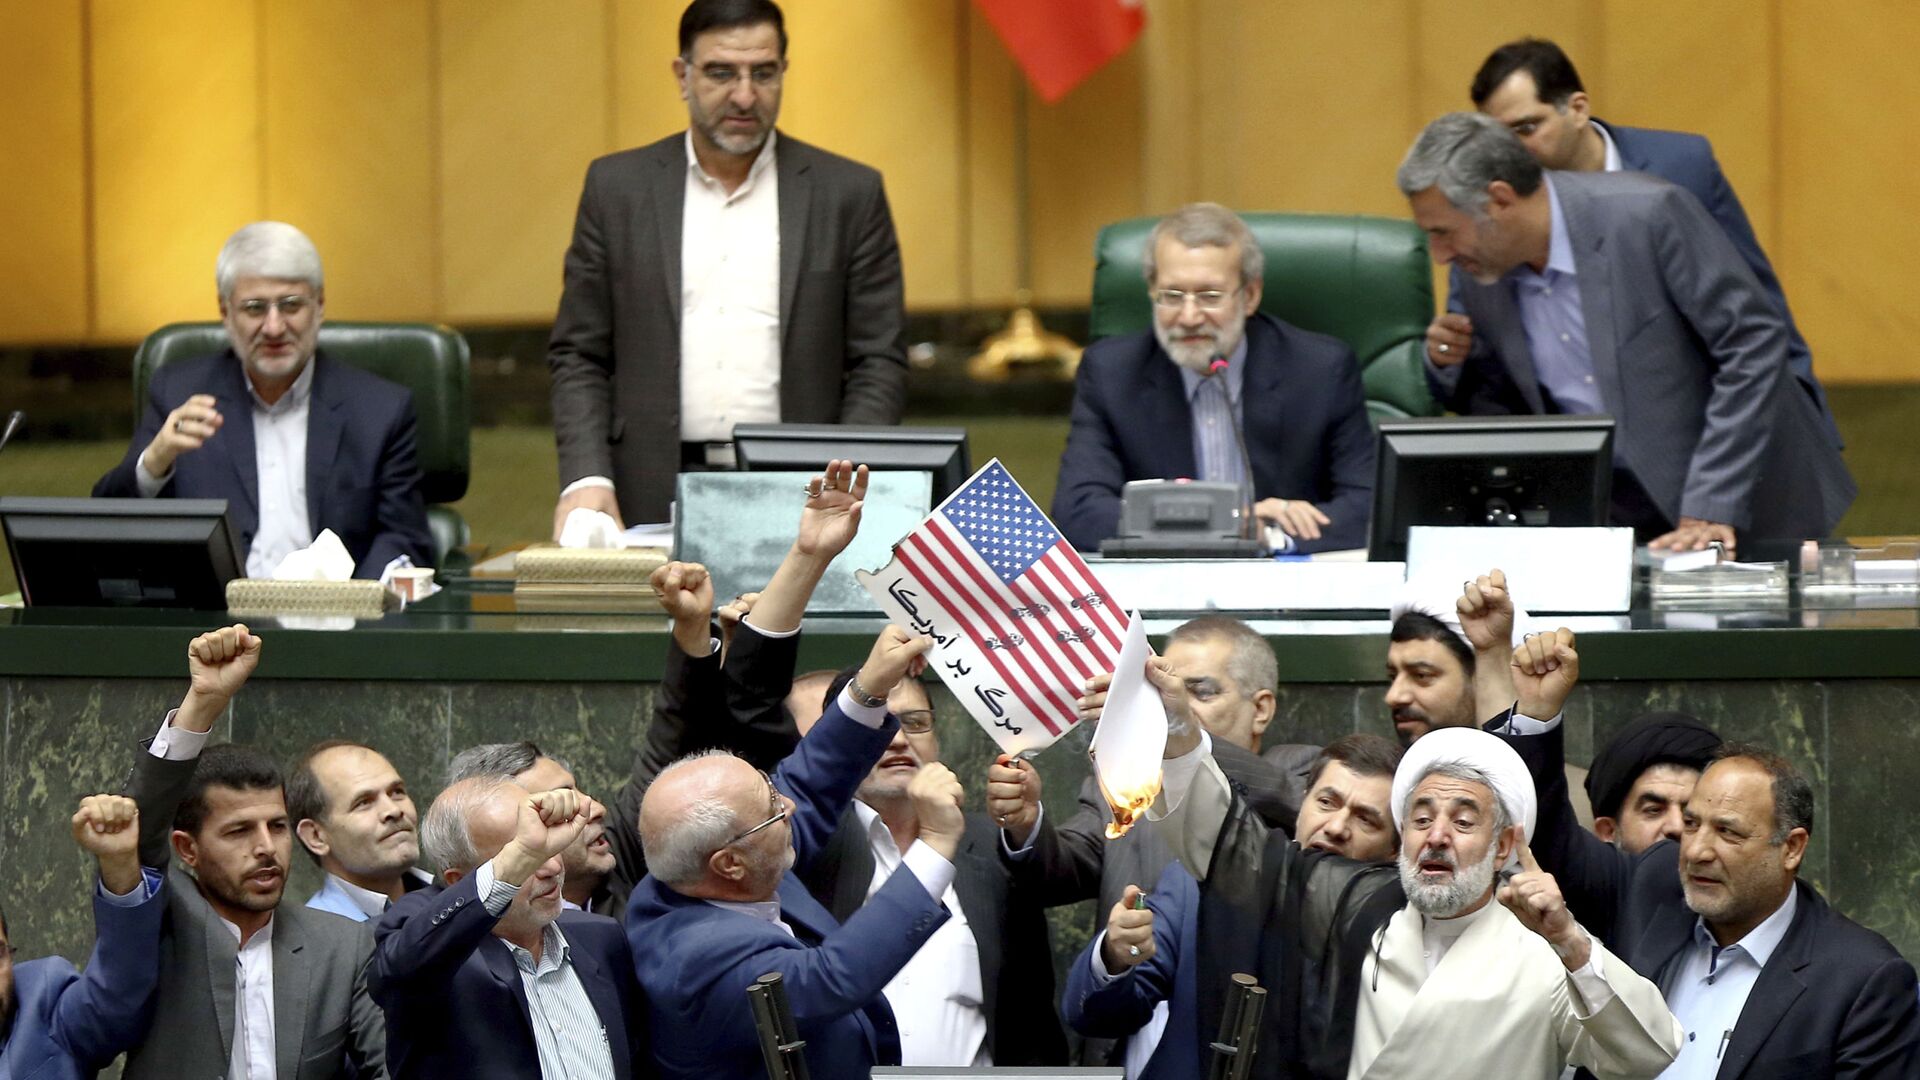  البرلمان الإيراني يحرق أوراق عليها علم الولايات المتحدة بعد خروج دونالد ترامب من صفقة الاتفاق النووي مع إيران، 9 مايو/ أيار 2018 - سبوتنيك عربي, 1920, 05.02.2021